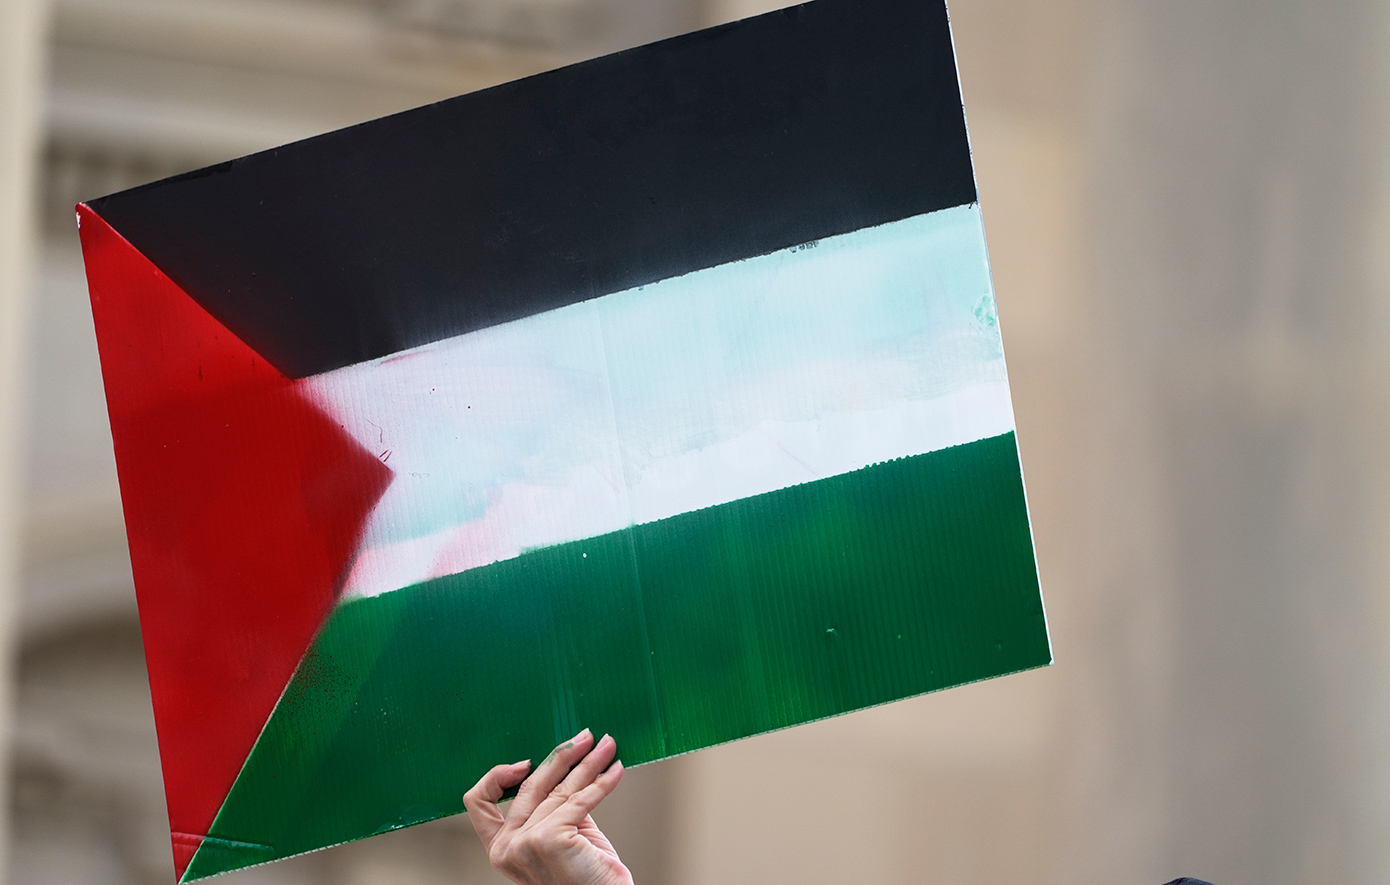 Η Ιρλανδία ανακοινώνει σήμερα την αναγνώριση του κράτους της Παλαιστίνης &#8211; Το βίντεο-προειδοποίηση του Ισραήλ